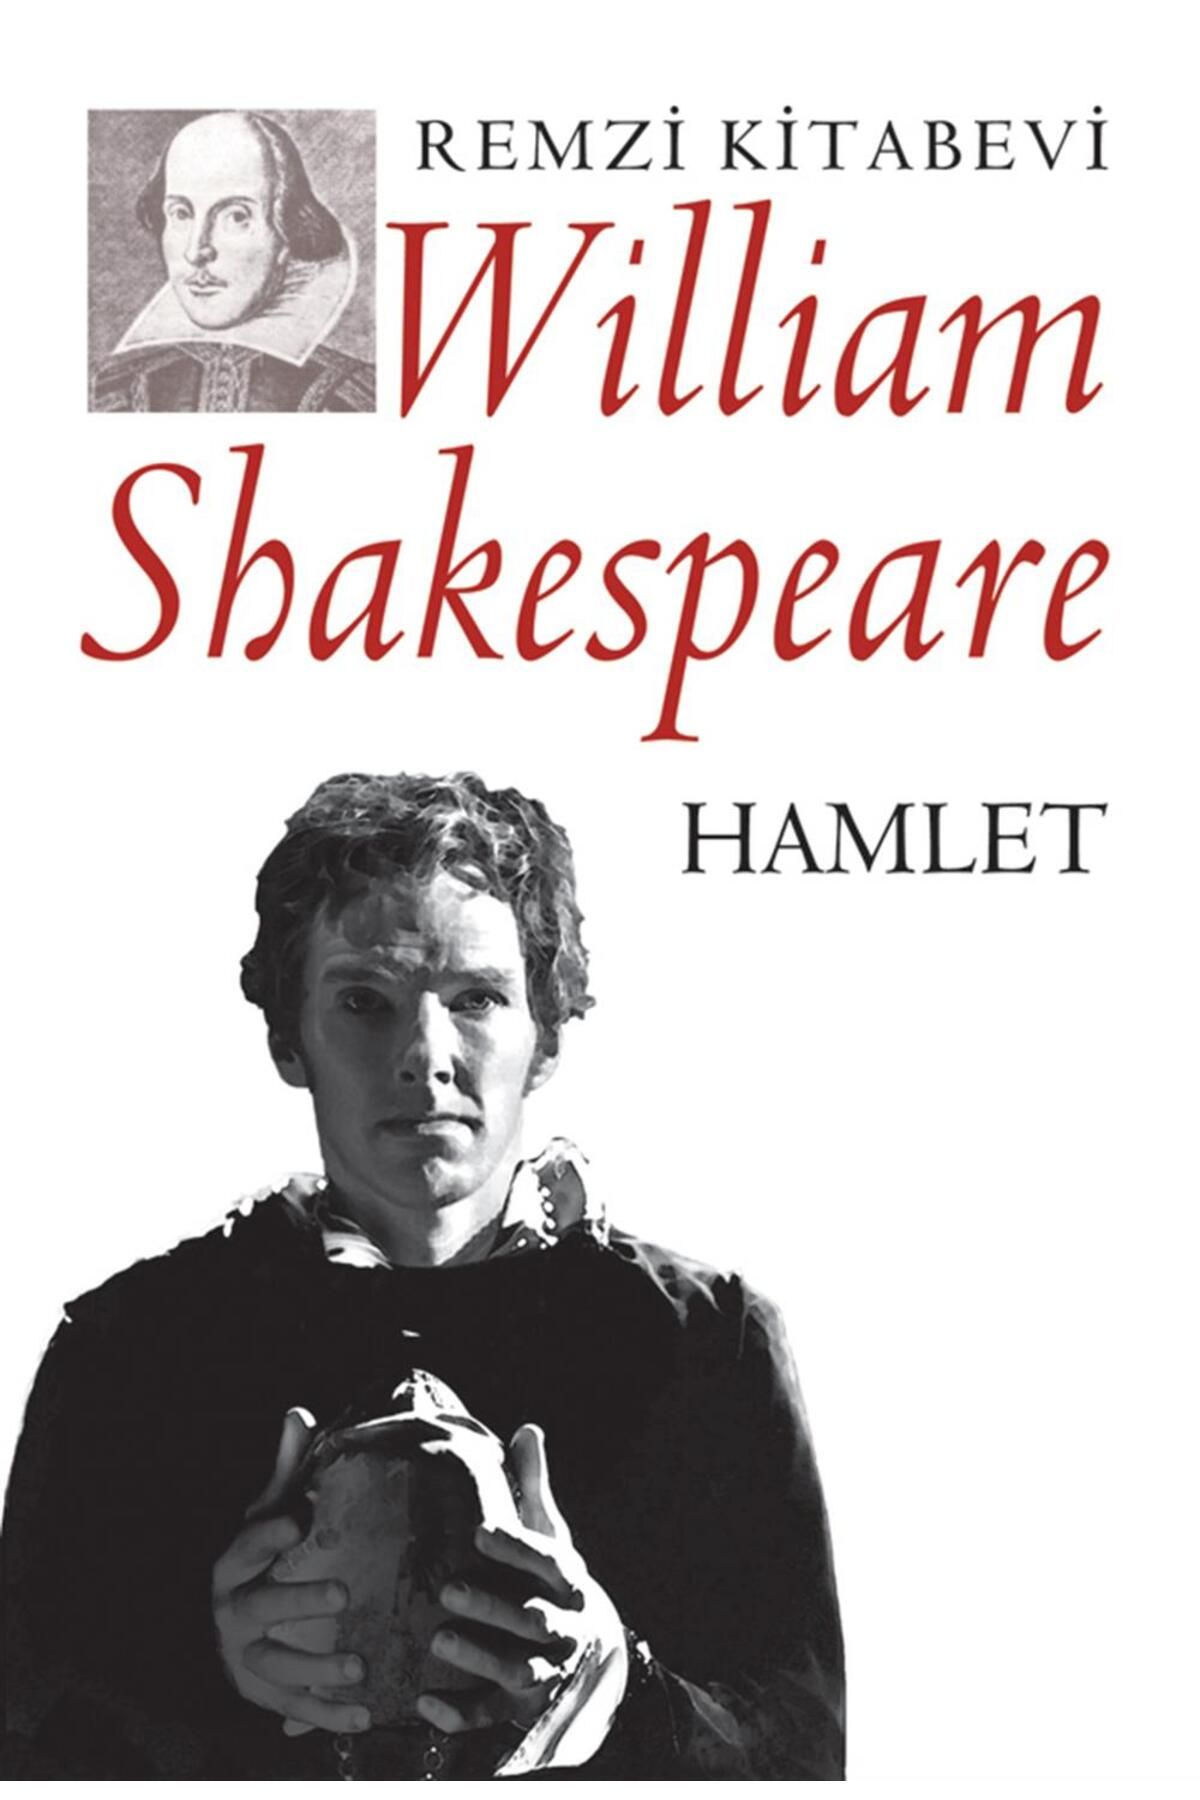 Remzi Kitabevi Hamlet